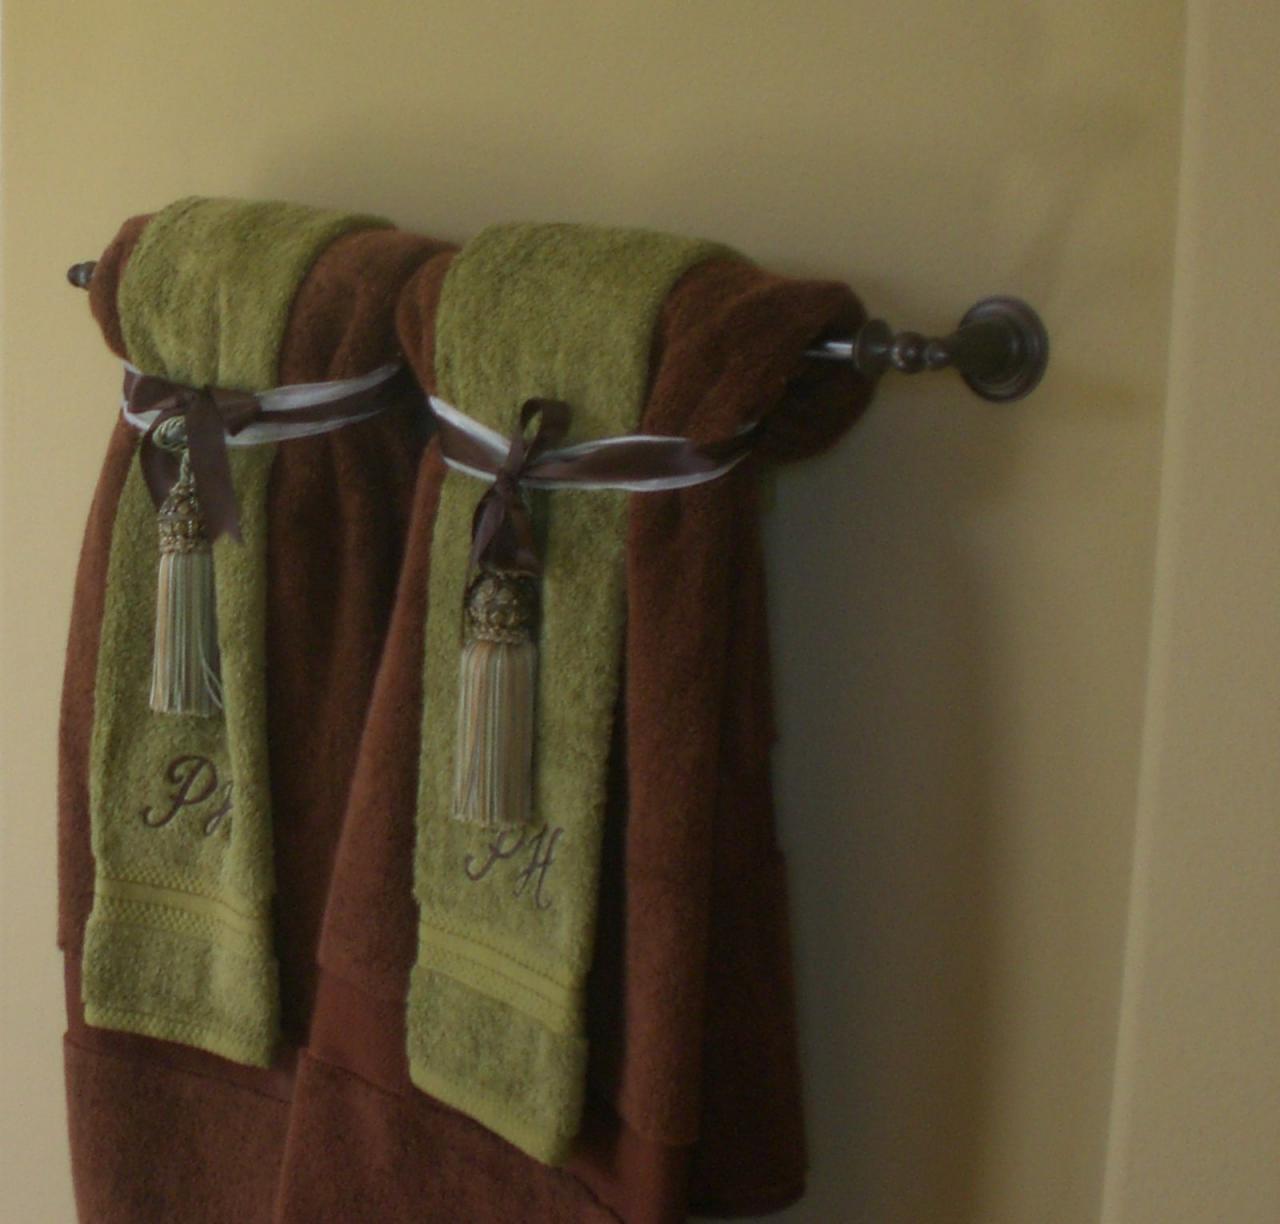 Decorative towels in the bathroom Bathroom towel decor, Hang towels